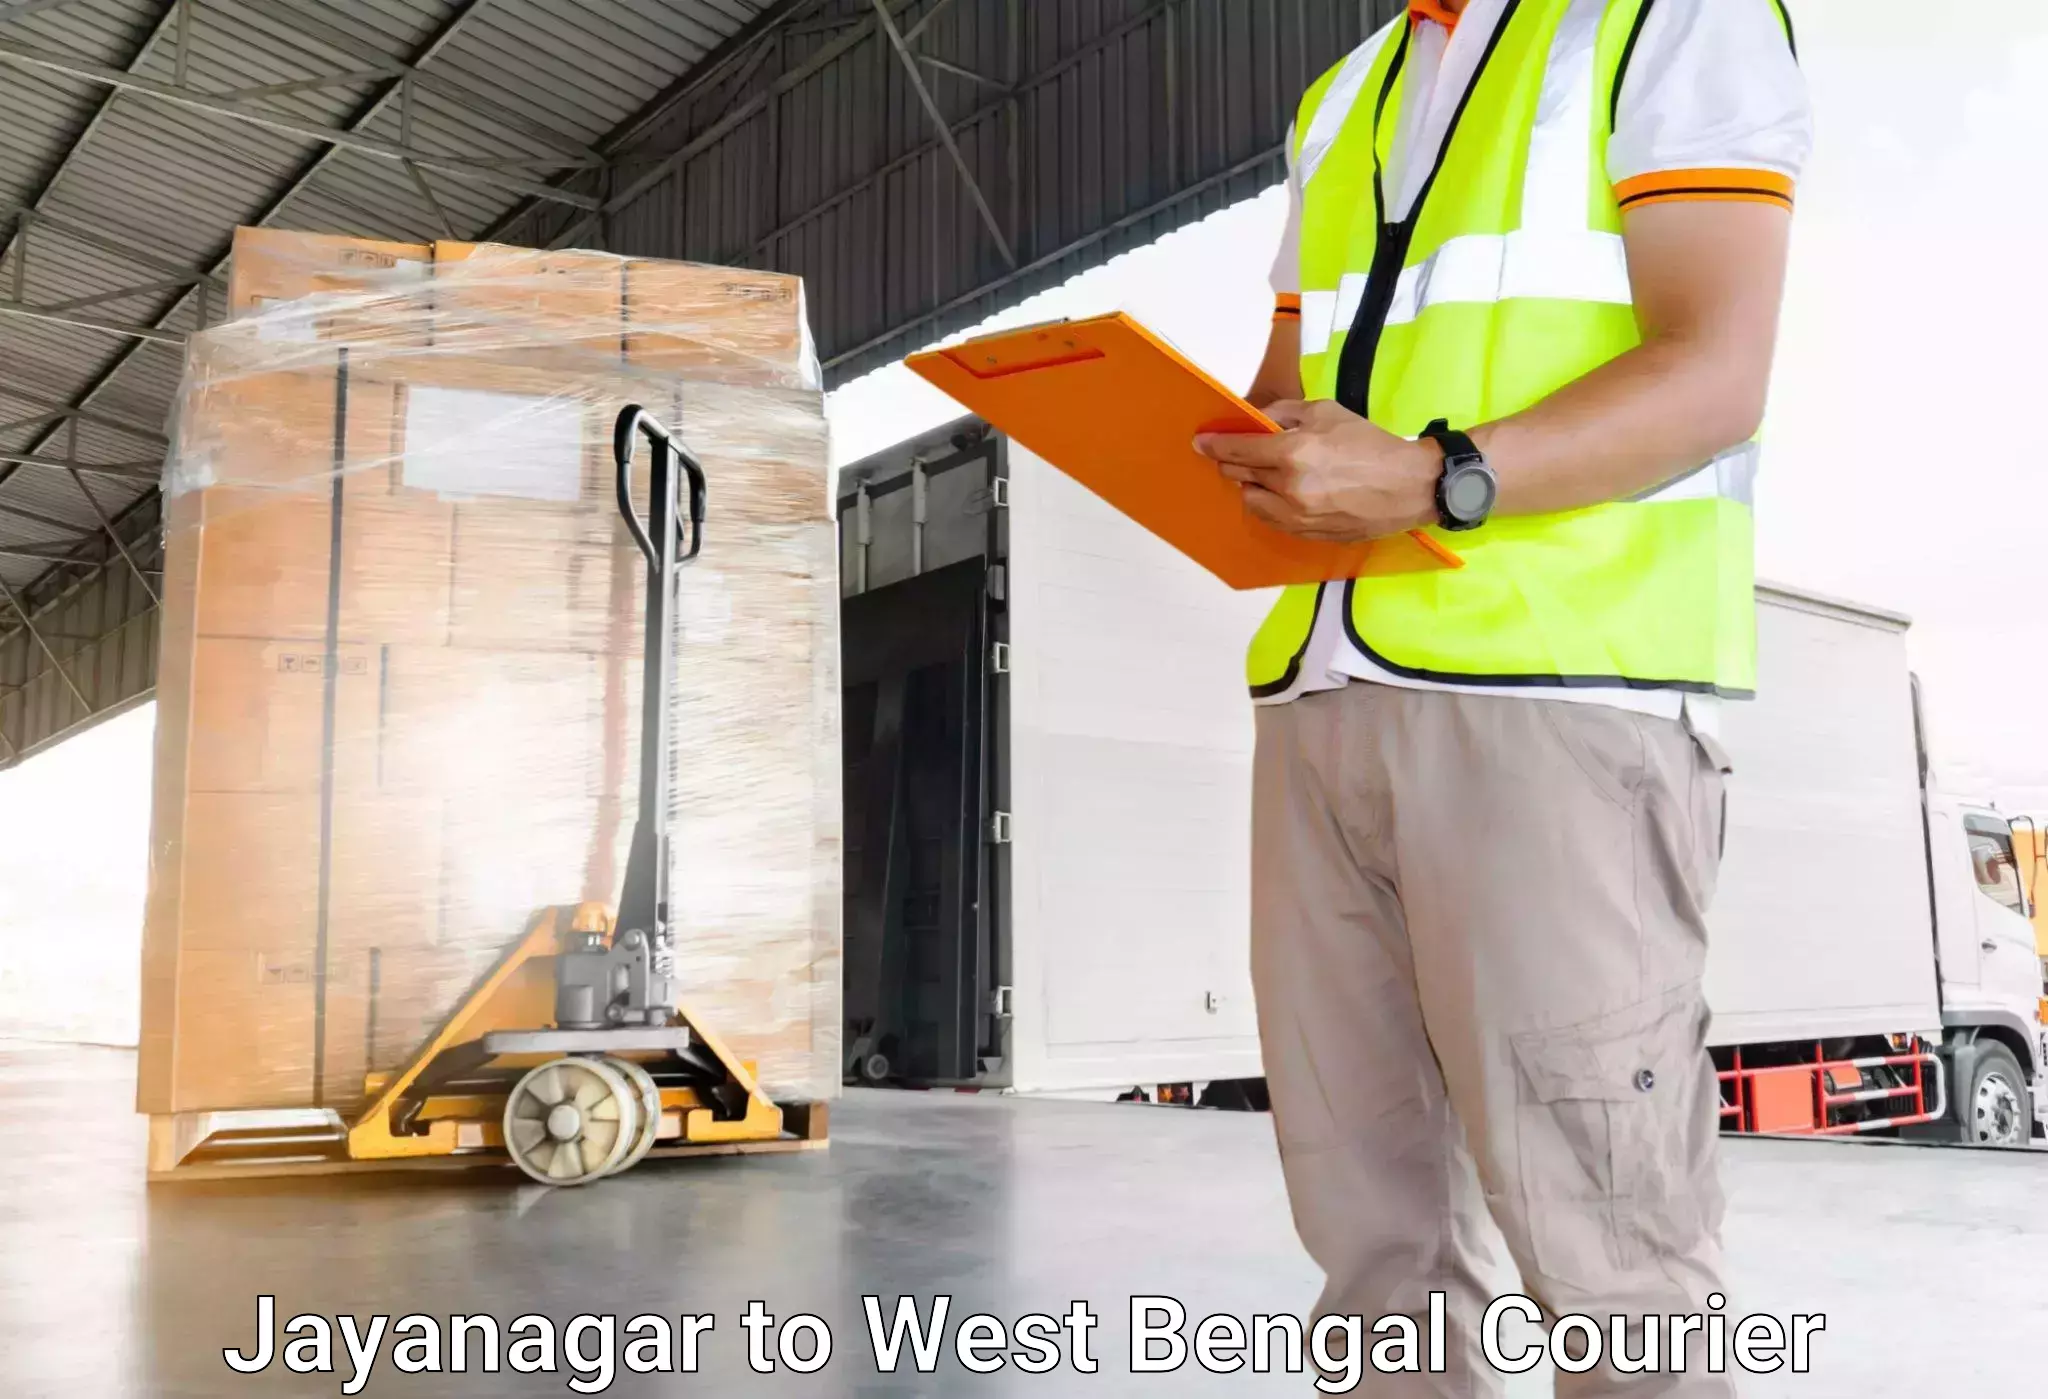 Same day luggage service Jayanagar to Kandi